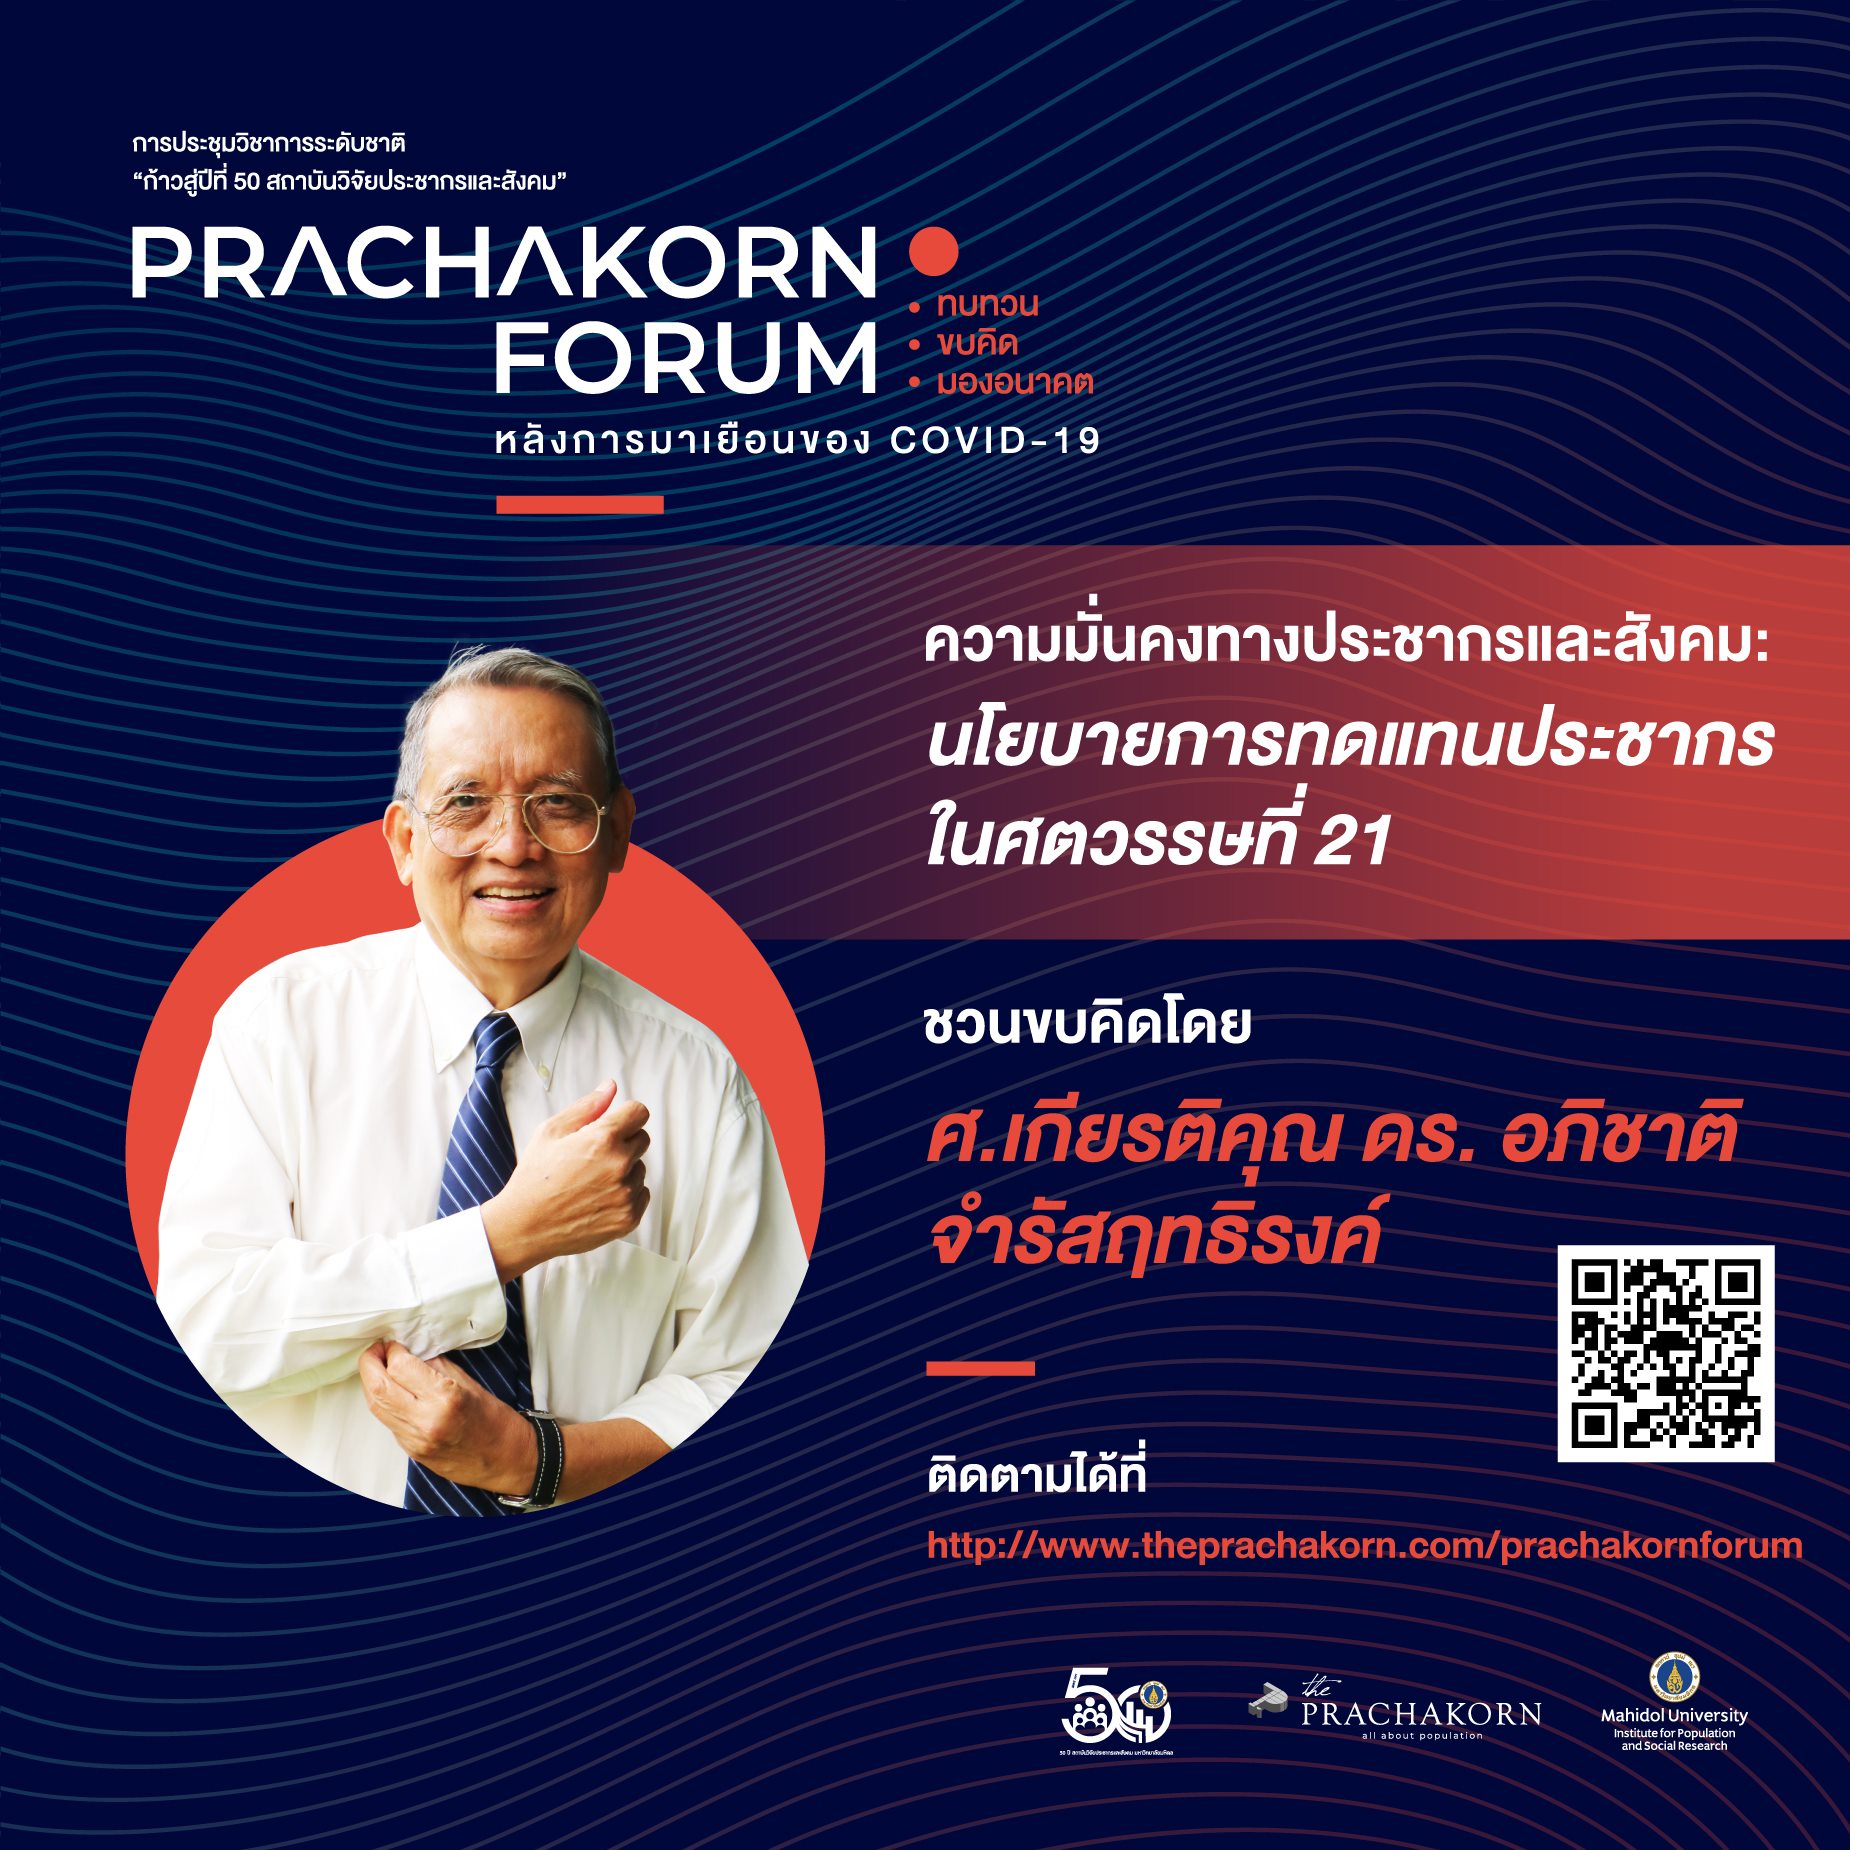 Prachakorn Forum EP.6 | ความมั่นคงทางประชากรและสังคม: นโยบายการทดแทนประชากรในศตวรรษที่ 21